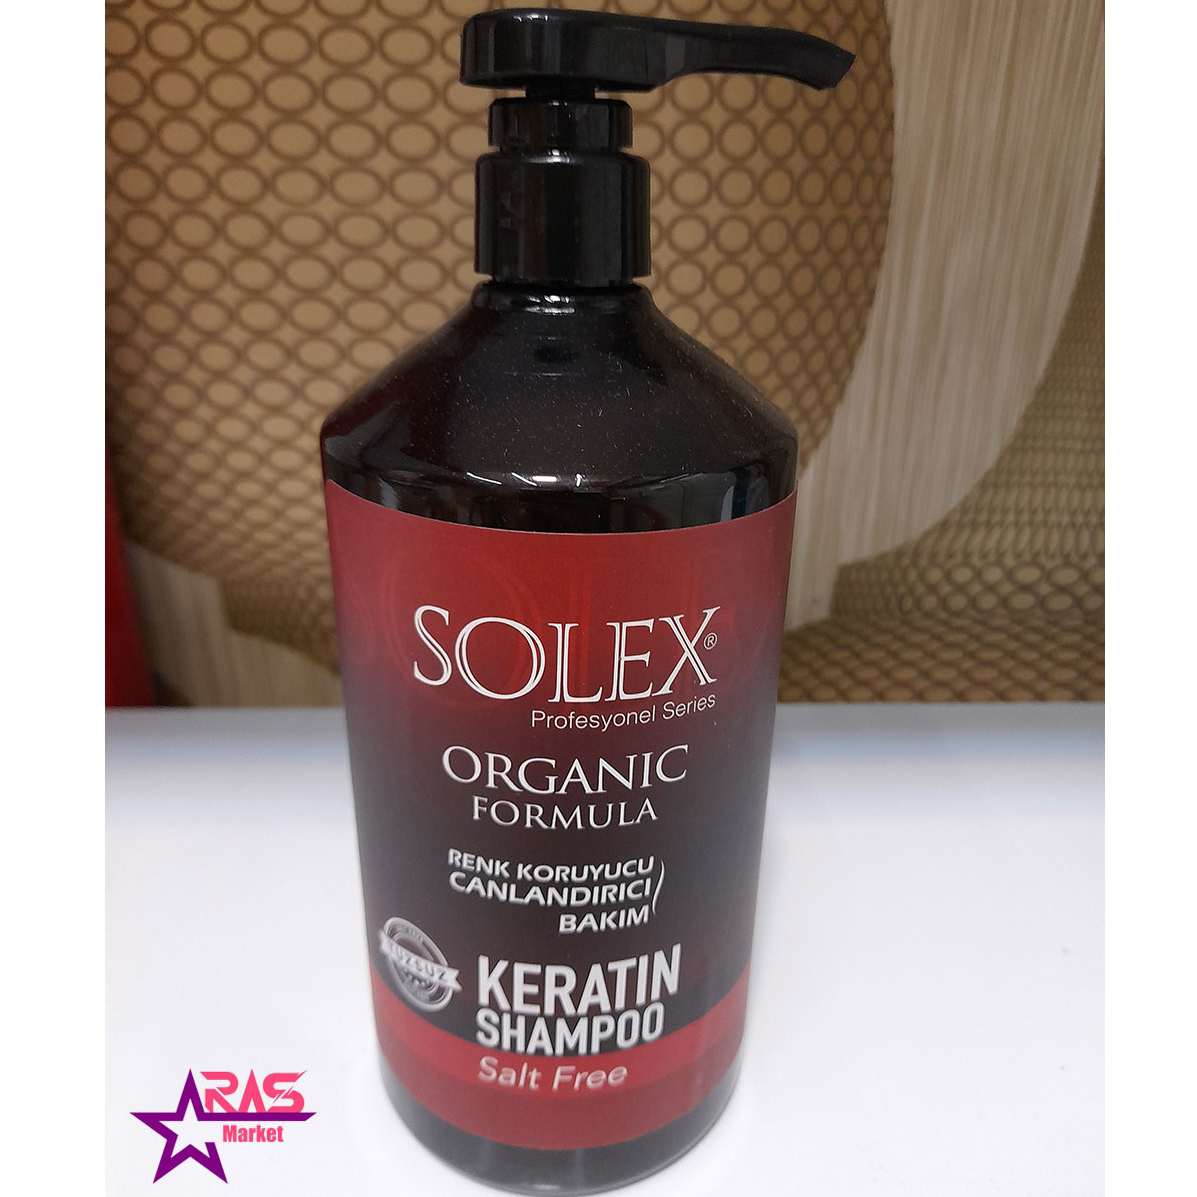 شامپو سولکس حاوی کراتین مخصوص موهای رنگ شده 1000 میلی لیتر ، فروشگاه اینترنتی ارس مارکت ، solex keratin shampoo 1